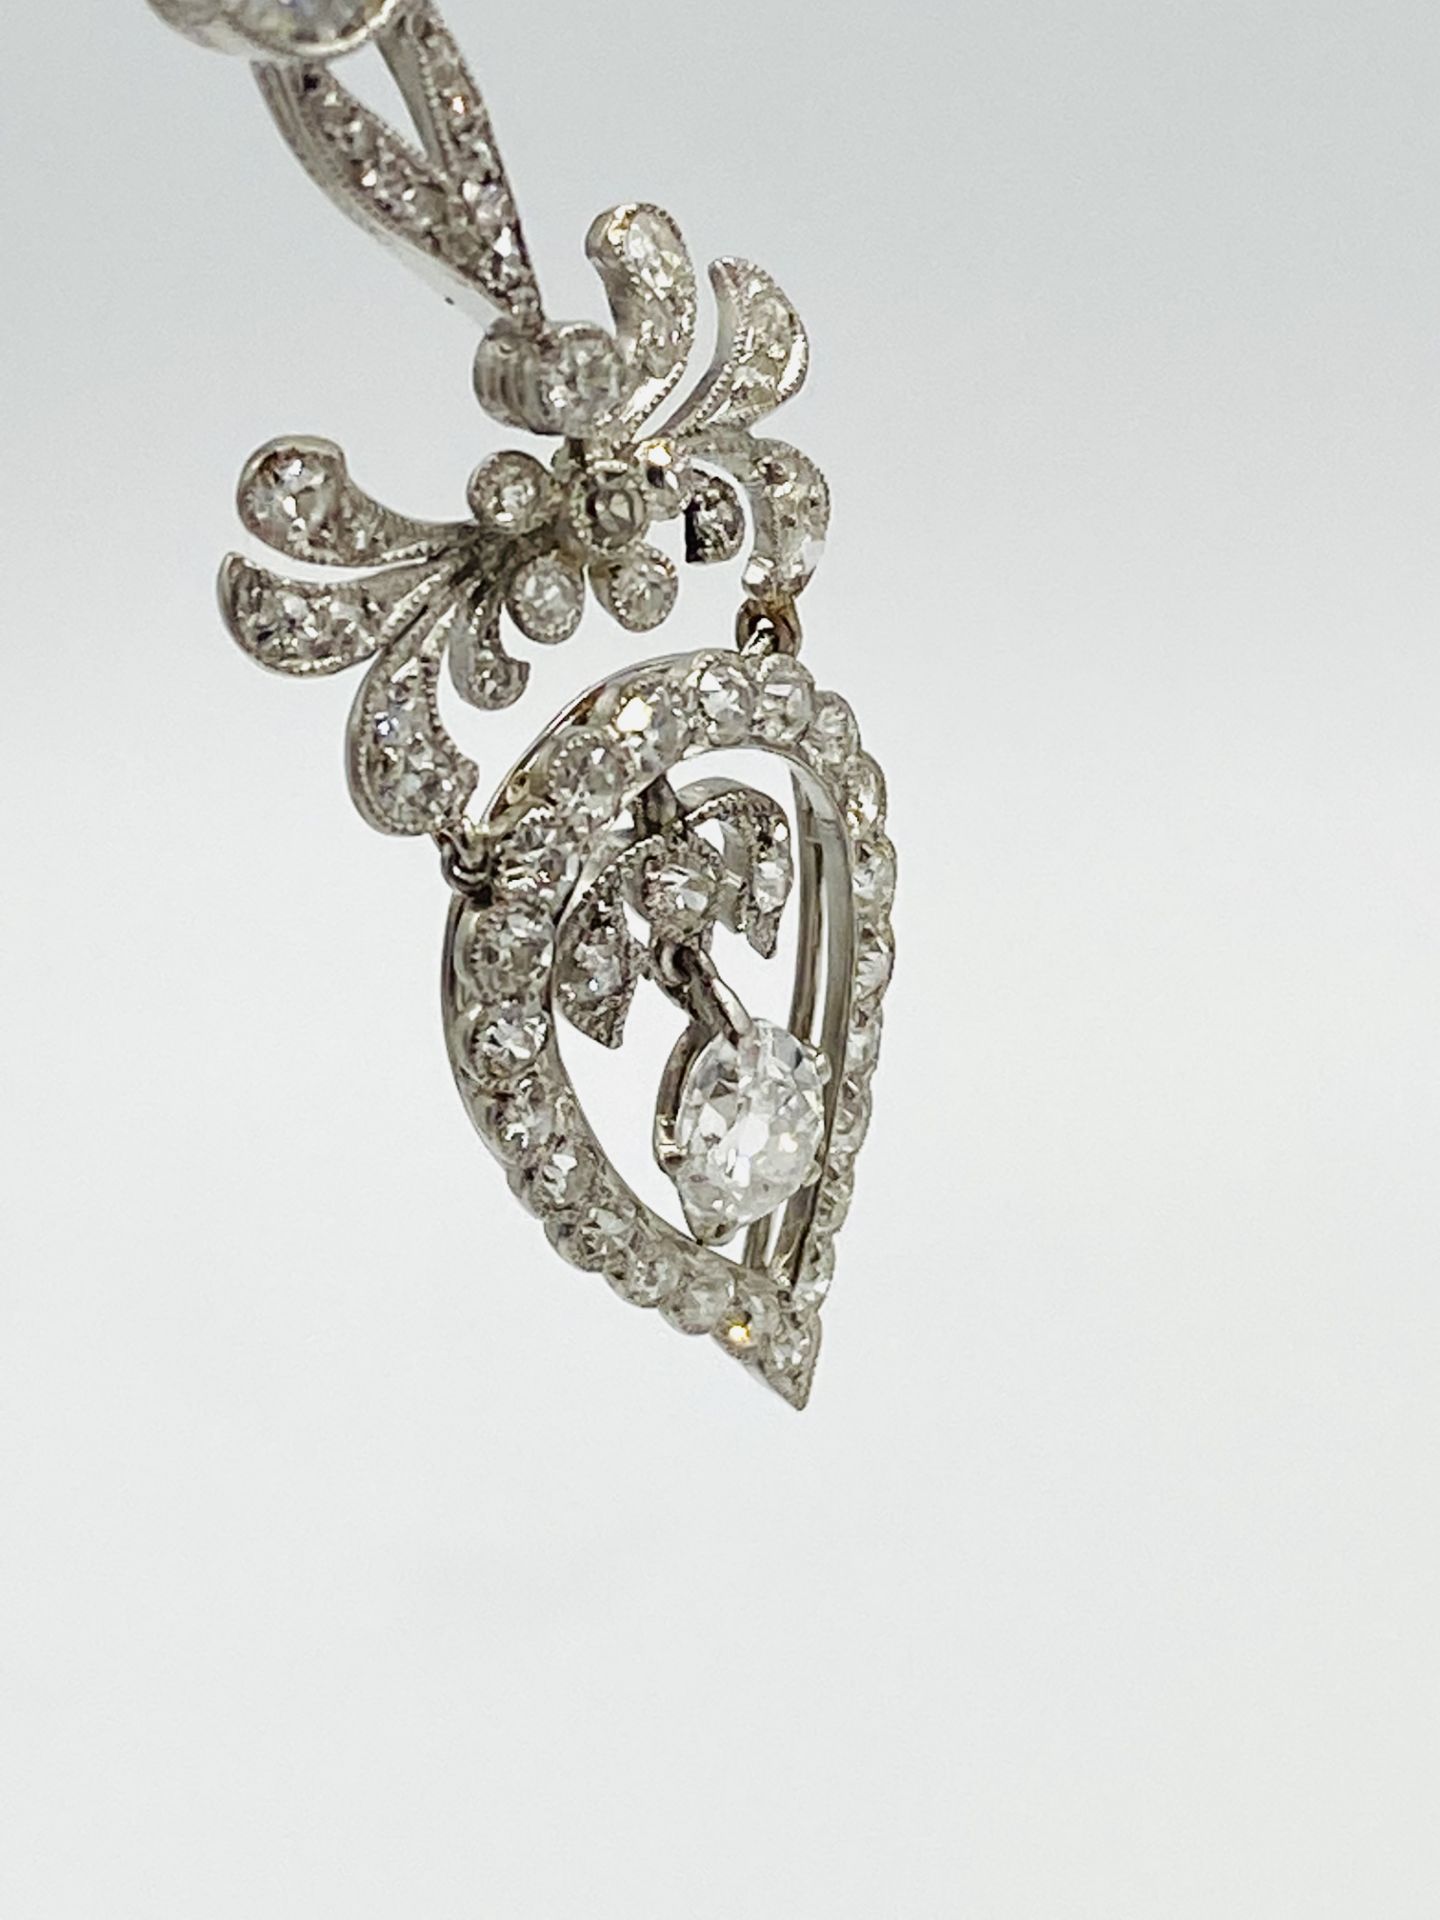 Edwardian white gold and diamond necklace - Image 10 of 10